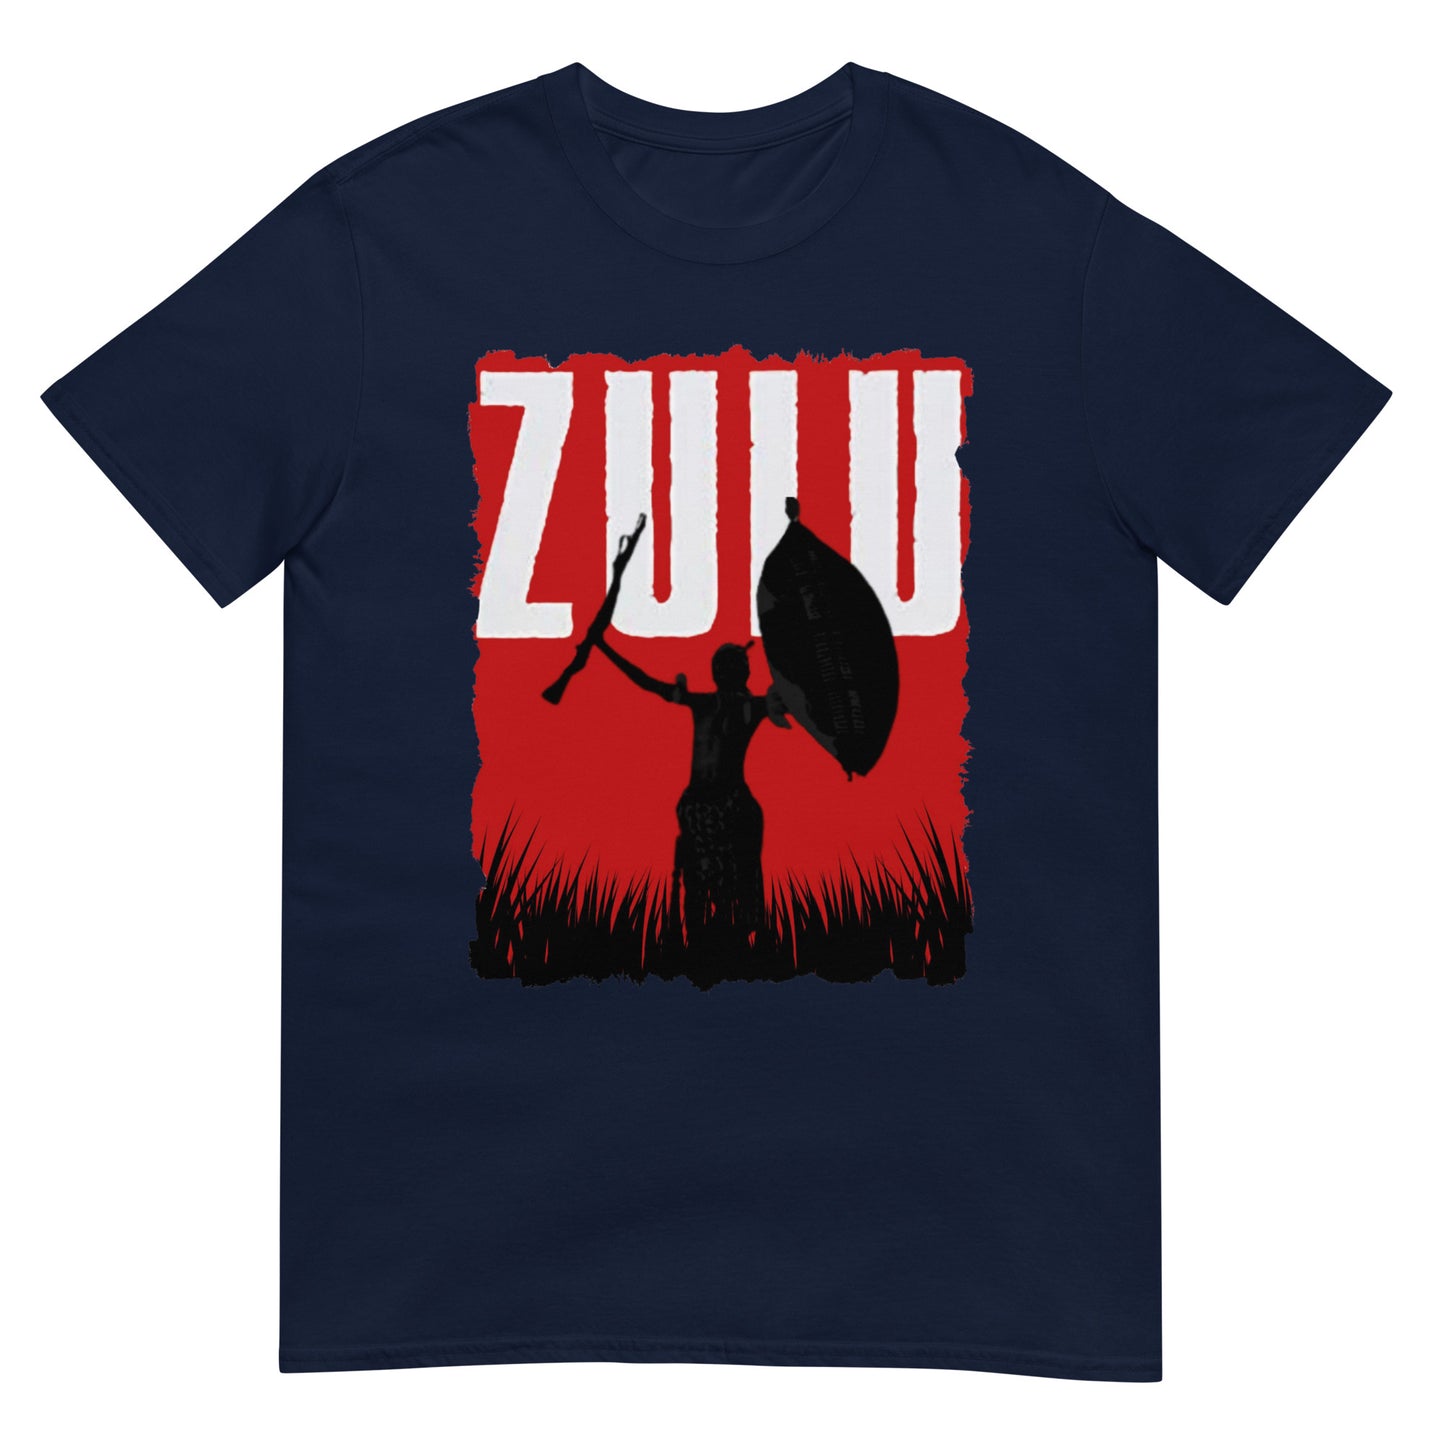 ZULU Title (t-shirt)